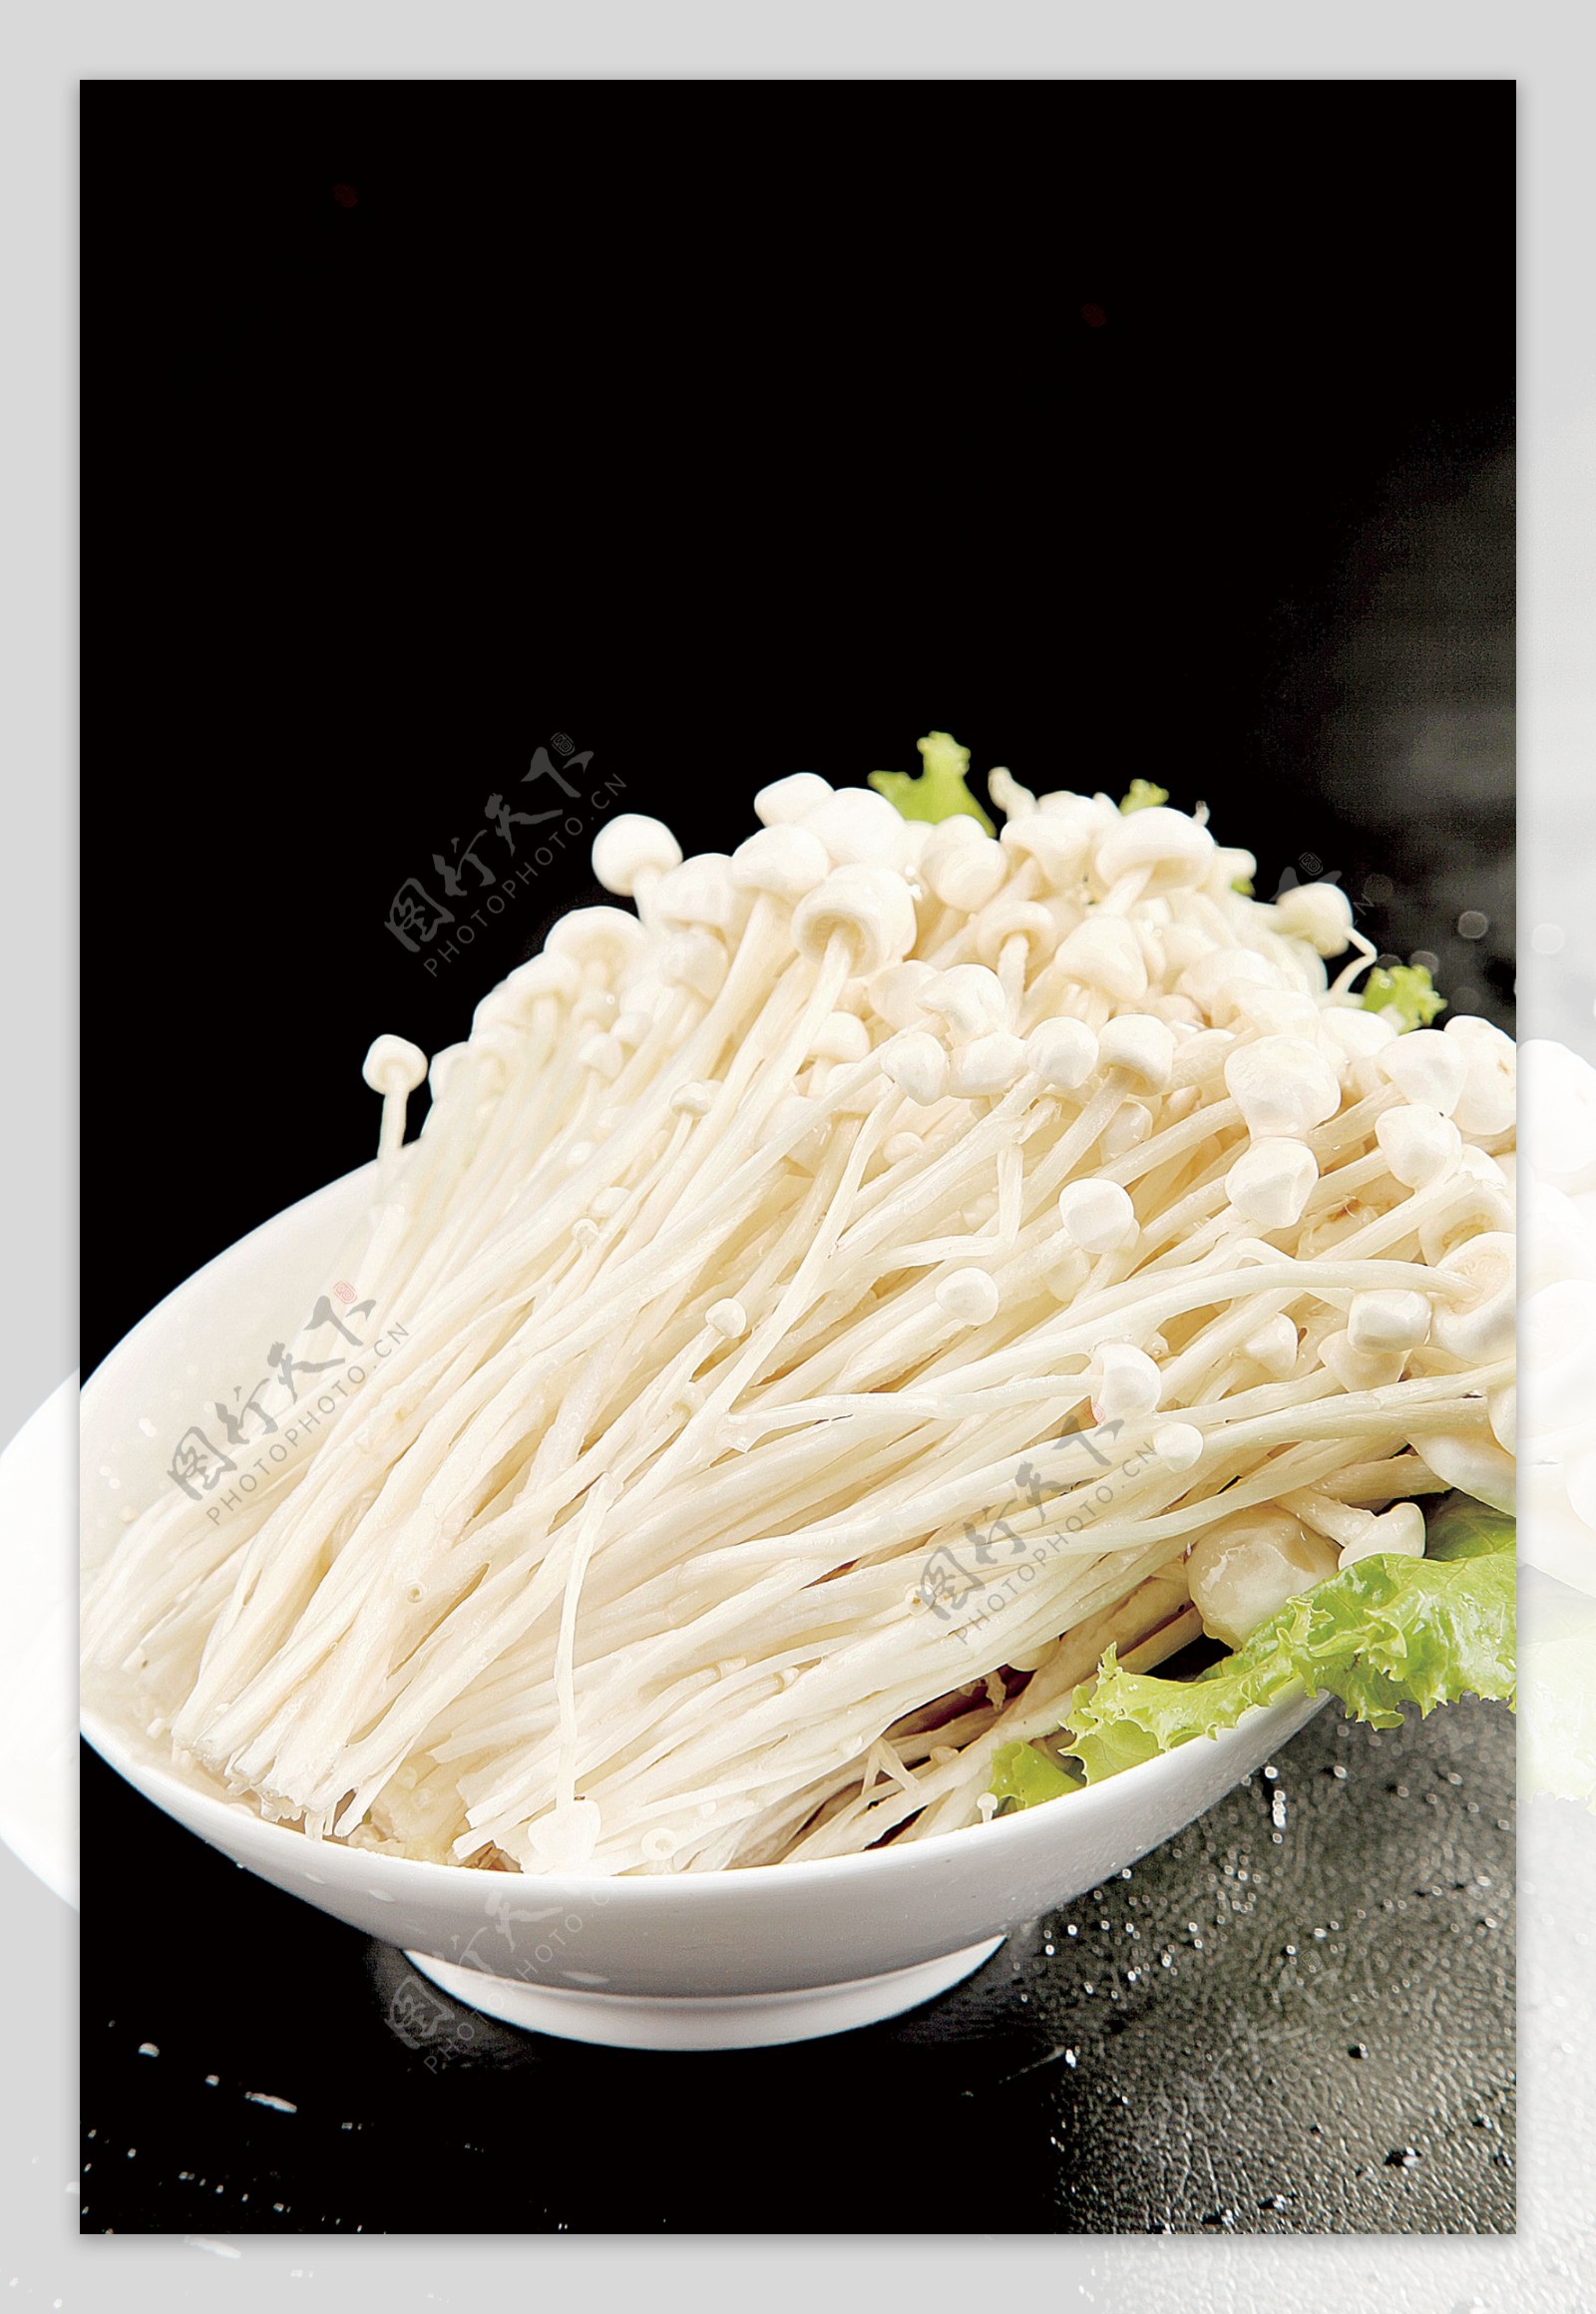 火锅配菜金针菇图片